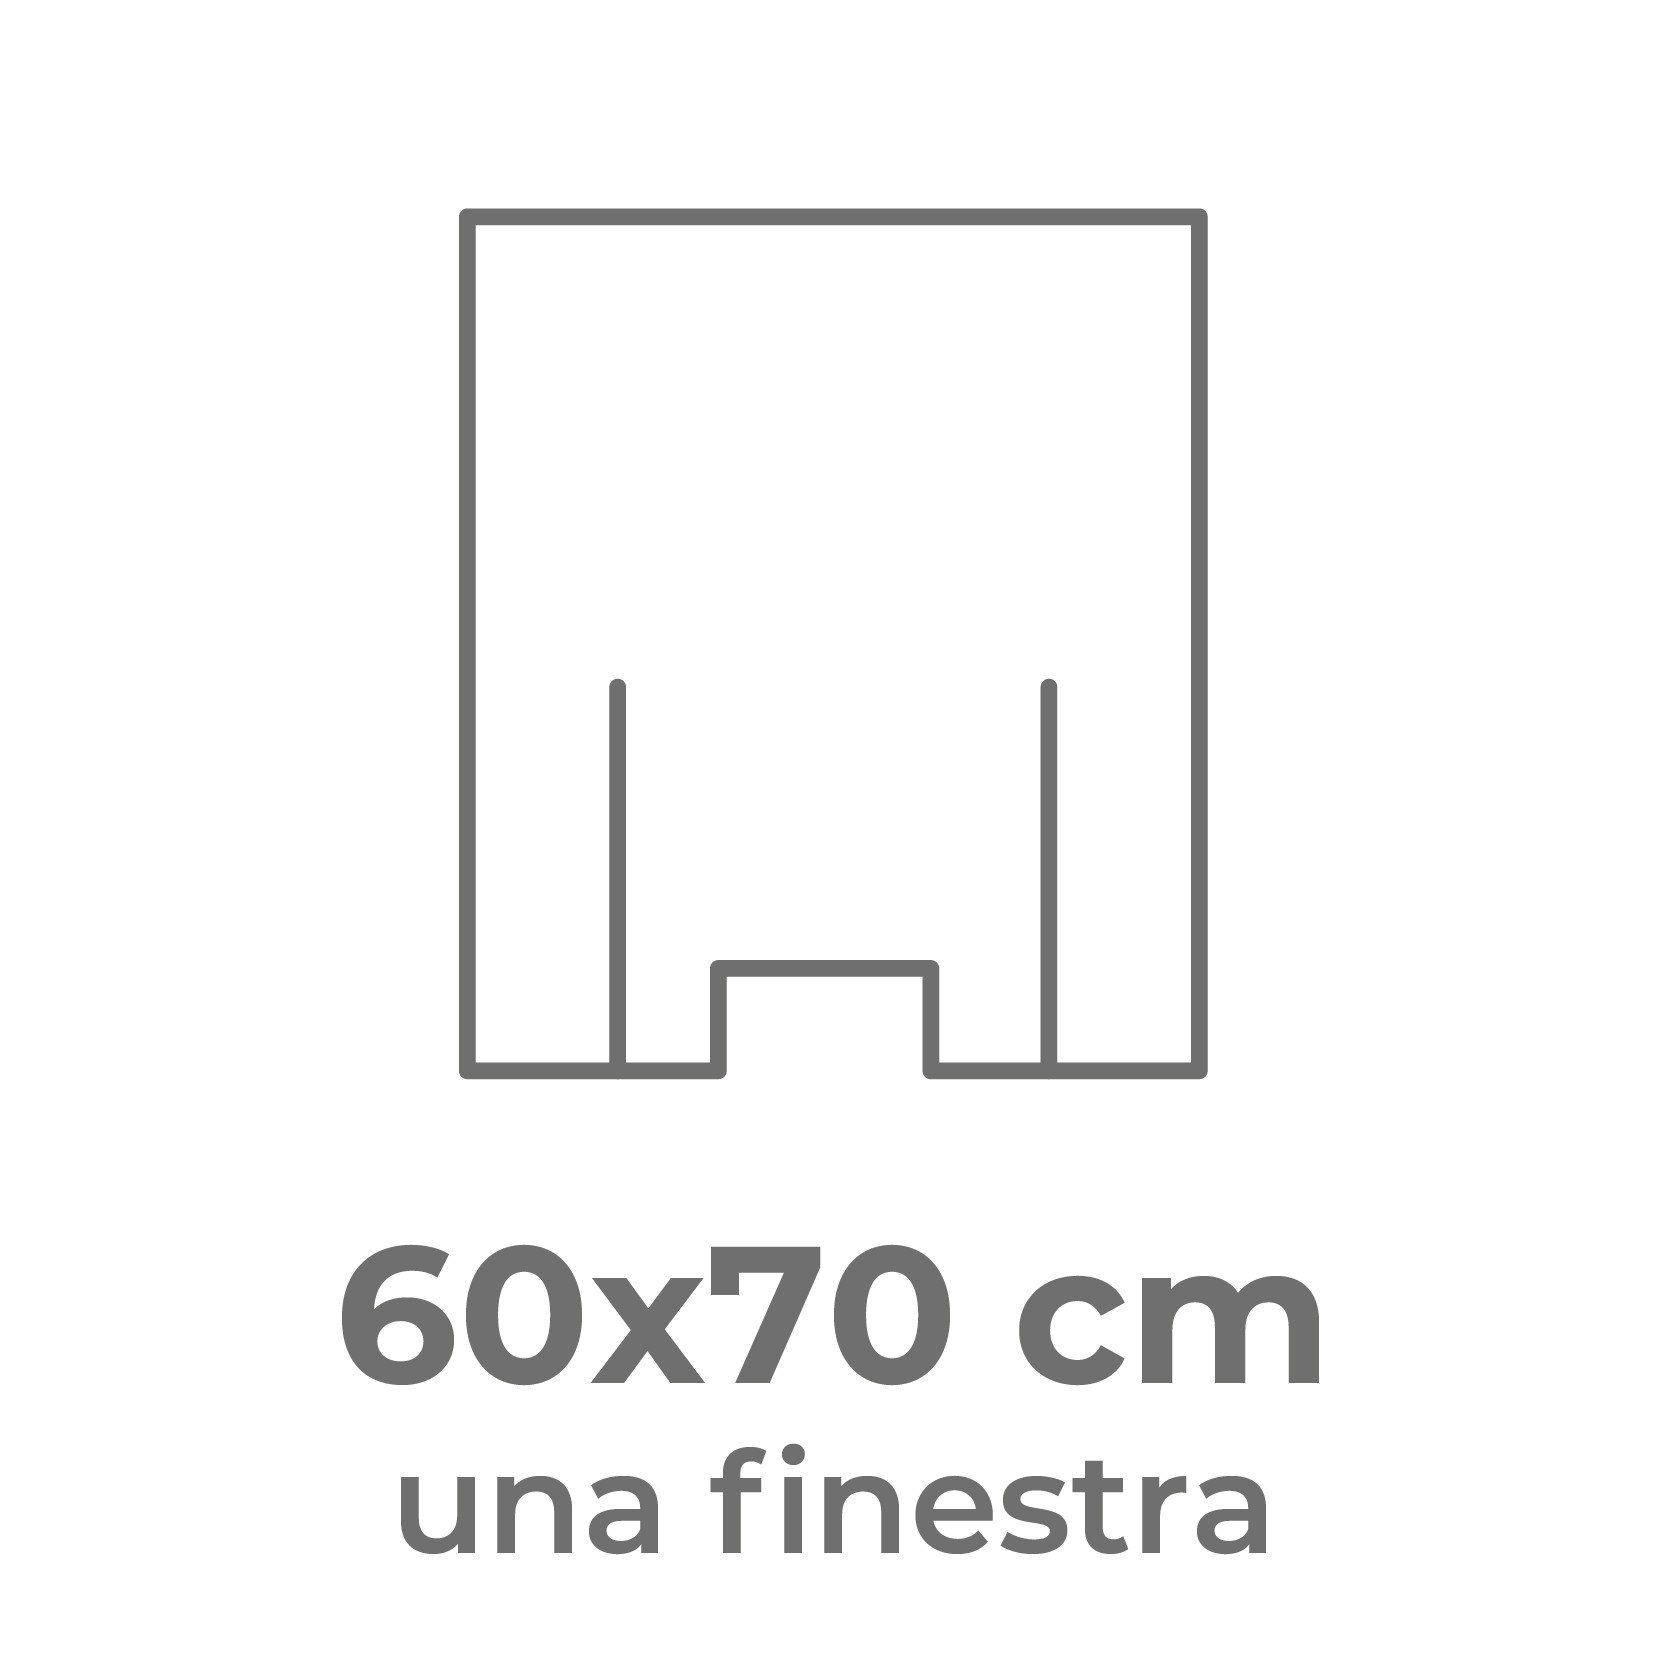 60x70 cm (una finestra)